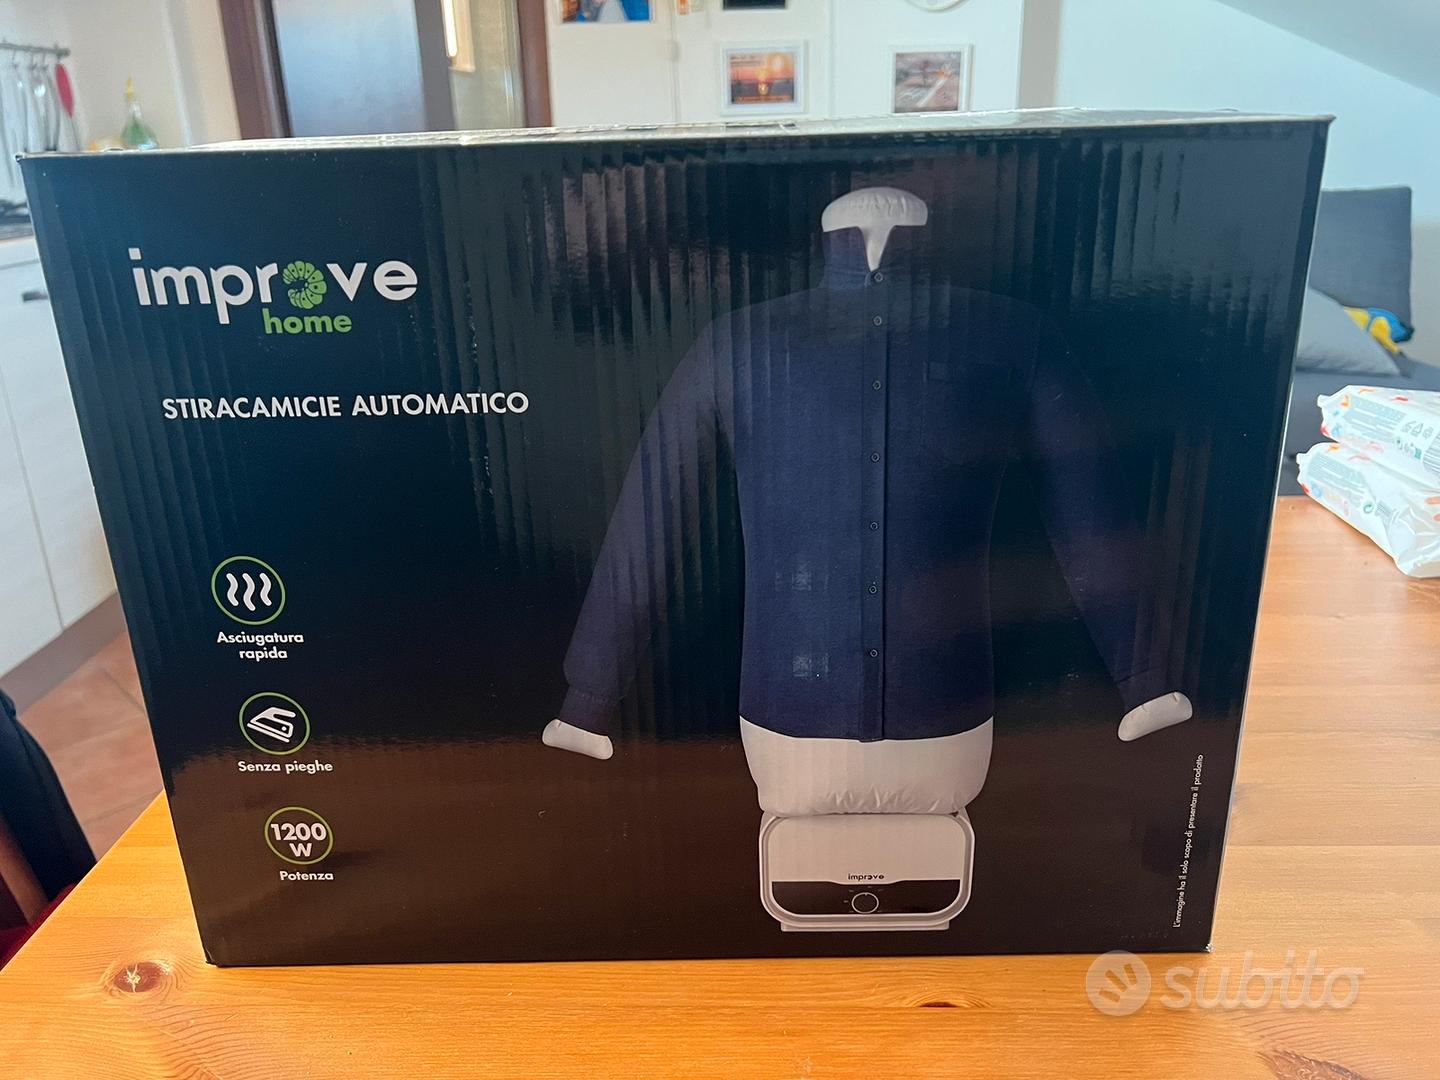 Stira camicie automatico - Elettrodomestici In vendita a Roma